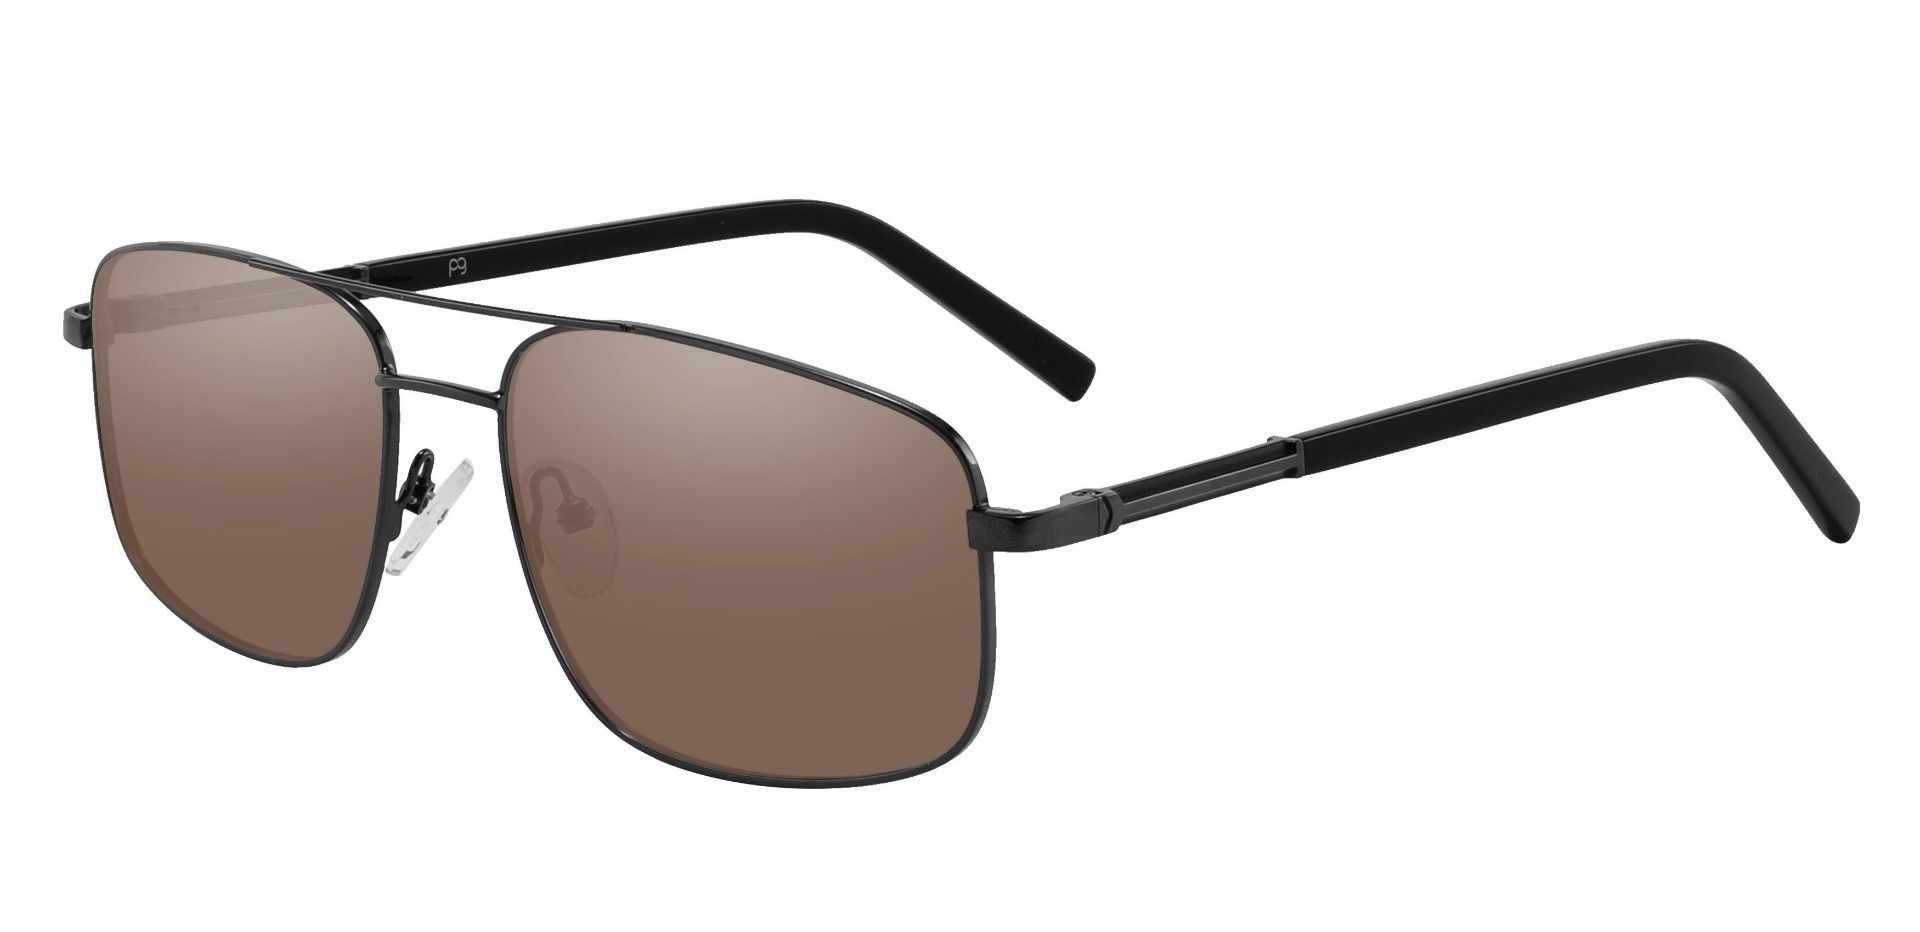 Davenport Aviator Reading Sunglasses - Black Frame With Brown Lenses